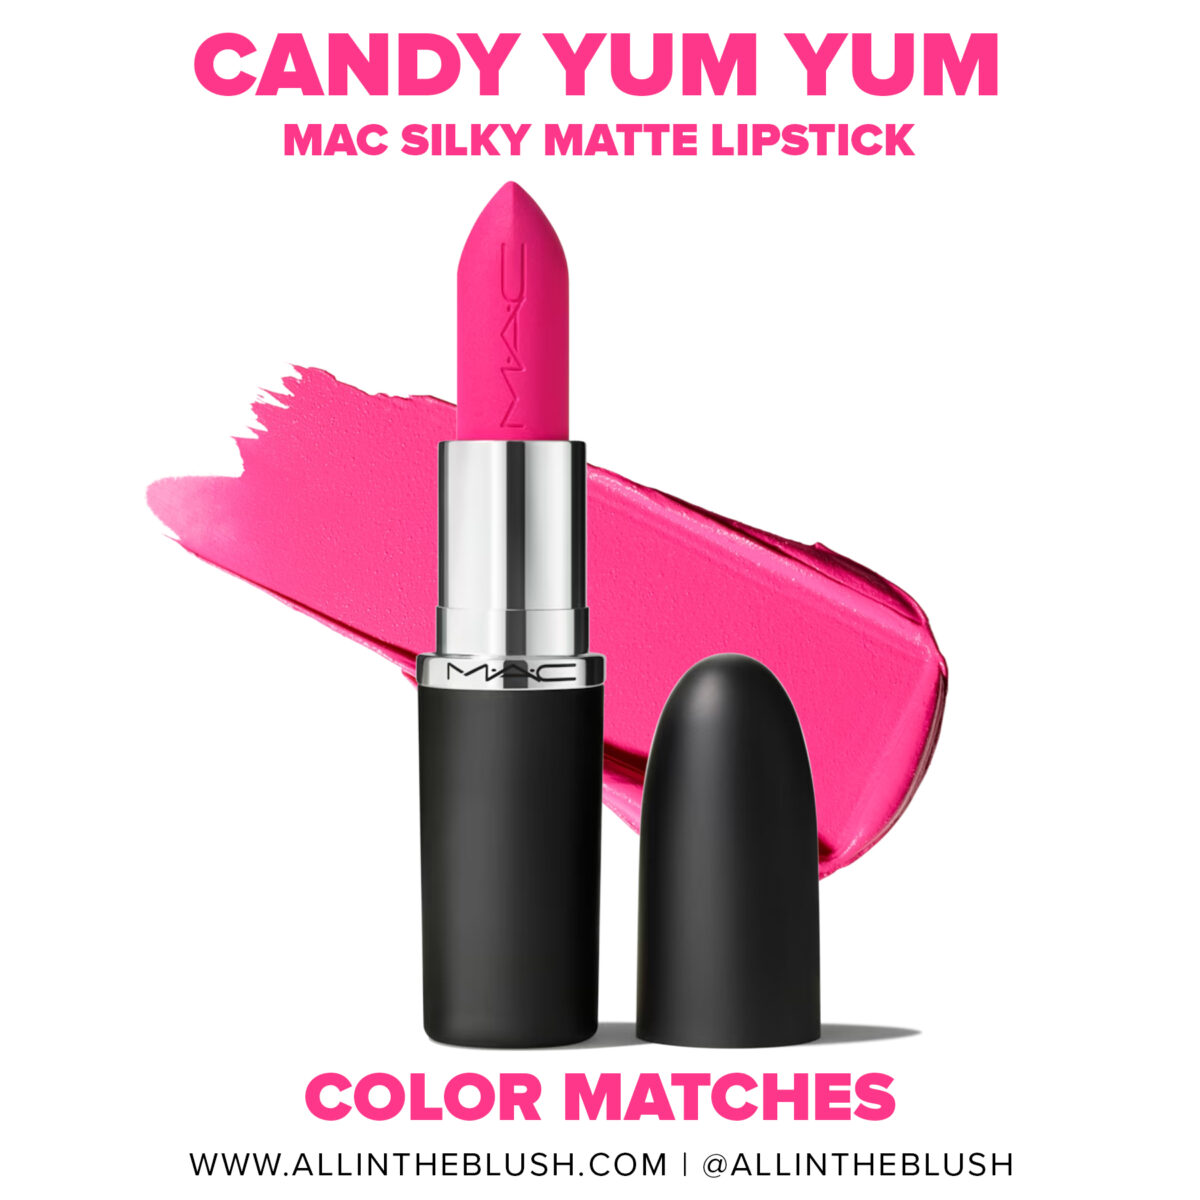 MAC Candy Yum Yum Silky Matte Lipstick Dupes